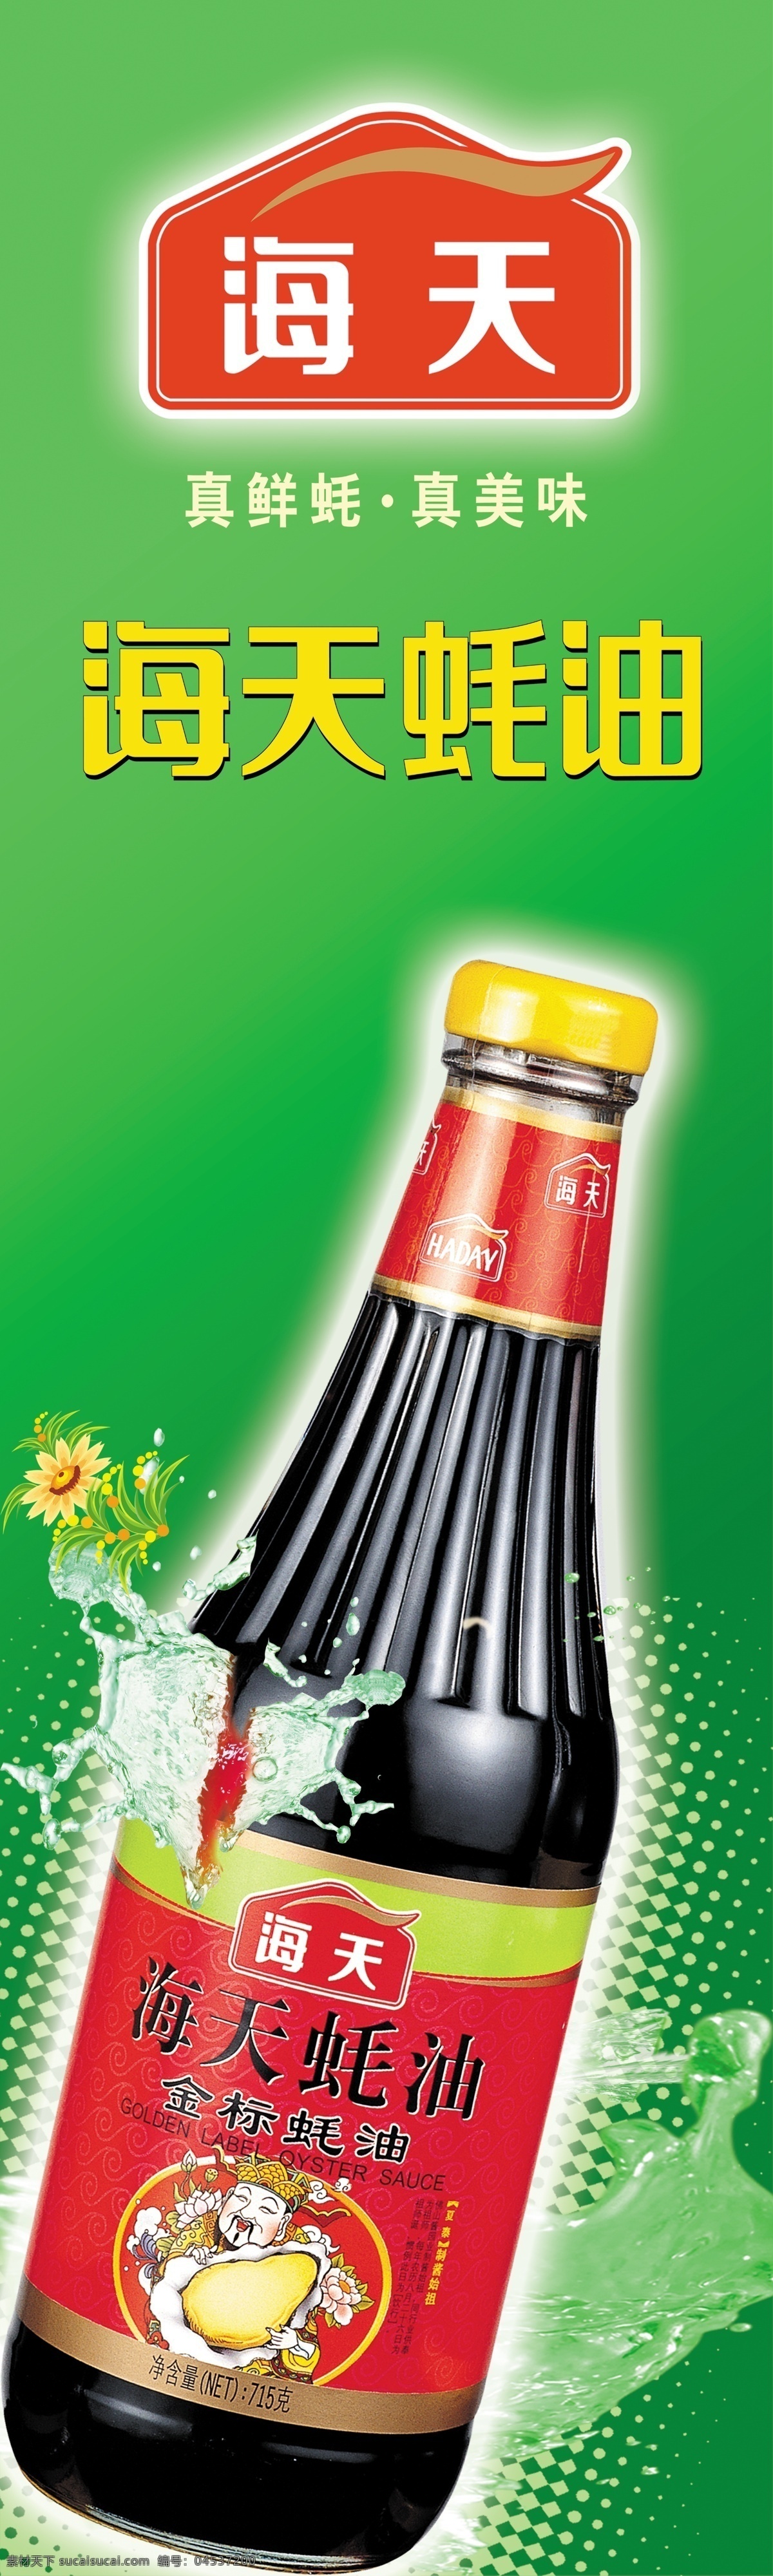 海天酱油 酱油 海天 包柱 展板 广告 超市素材